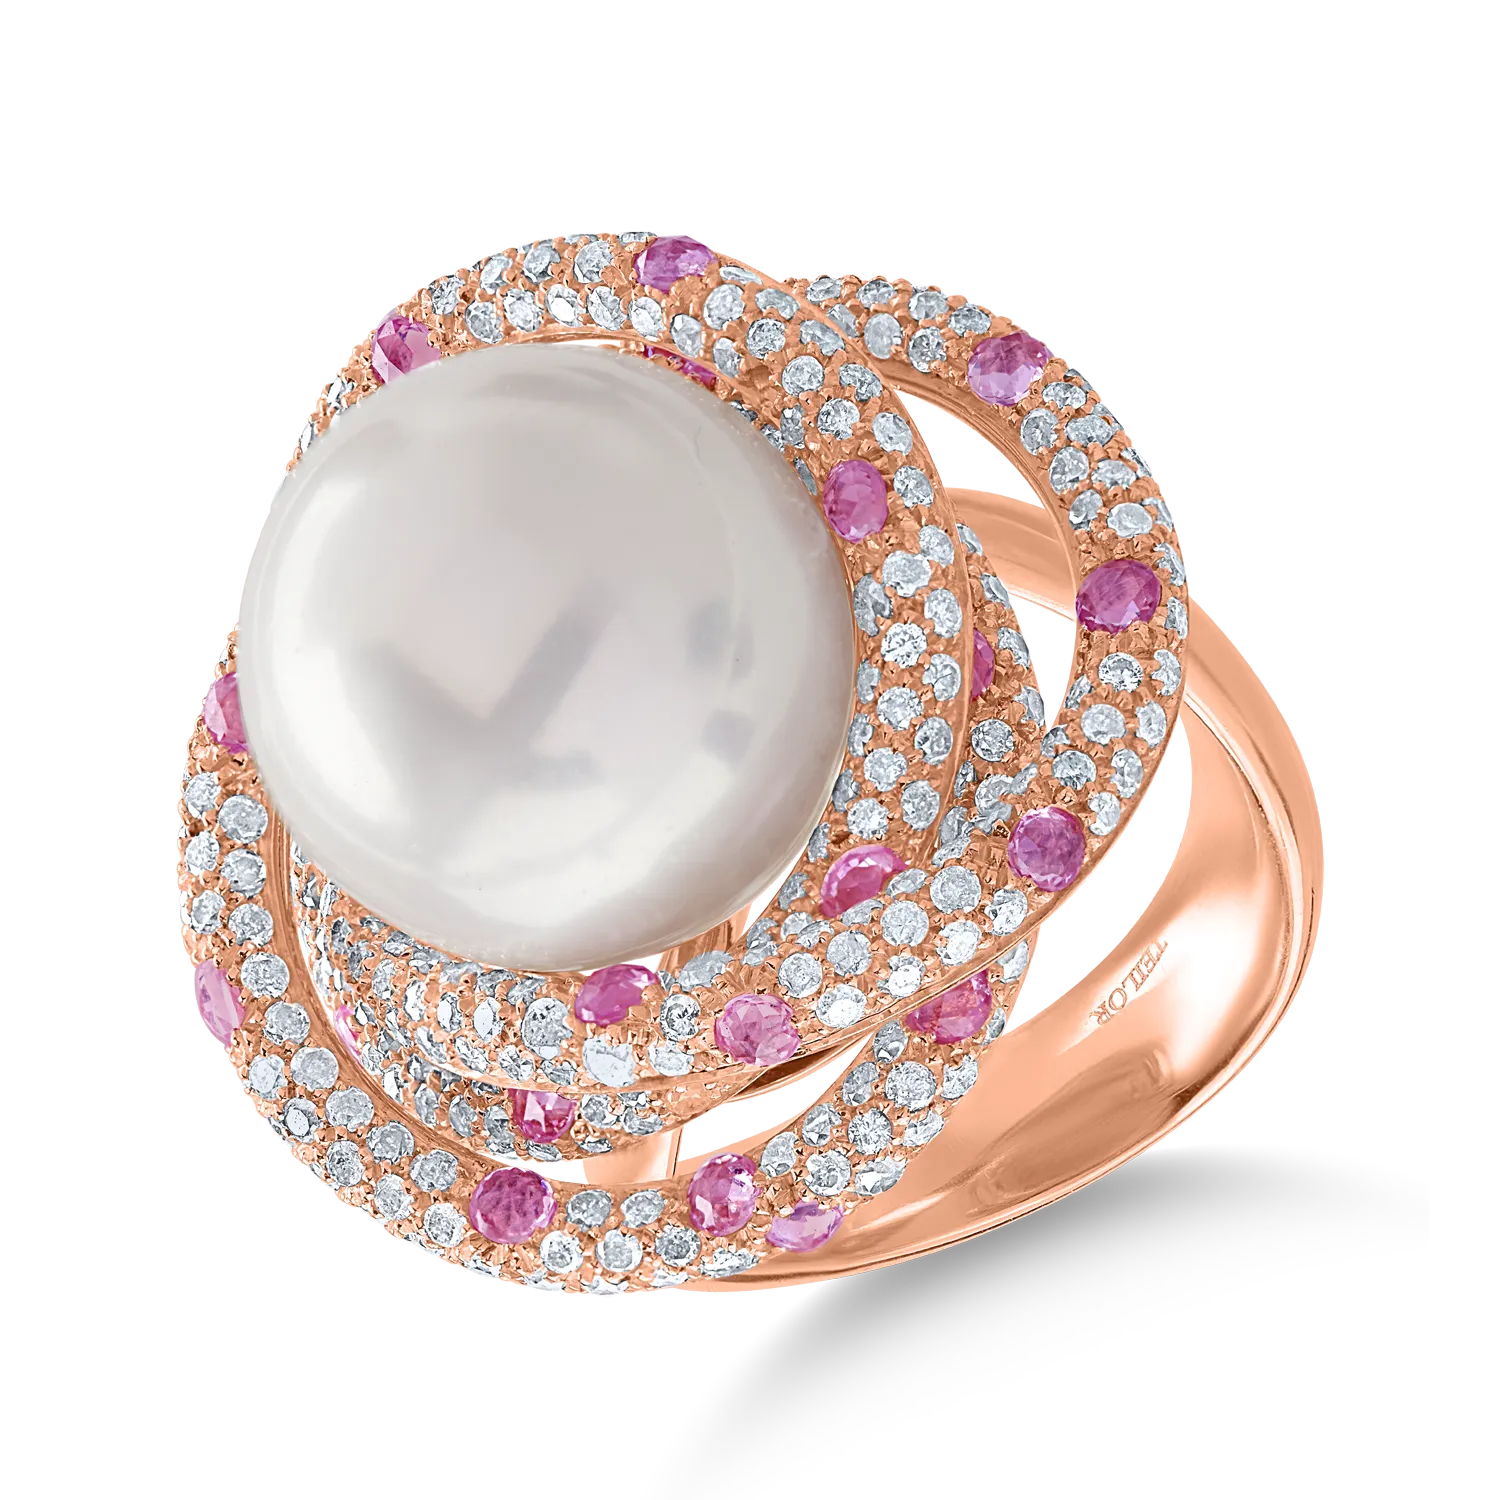 Inel din aur roz cu perla de cultura de 23.3ct si pietre pretioase de 3.15ct